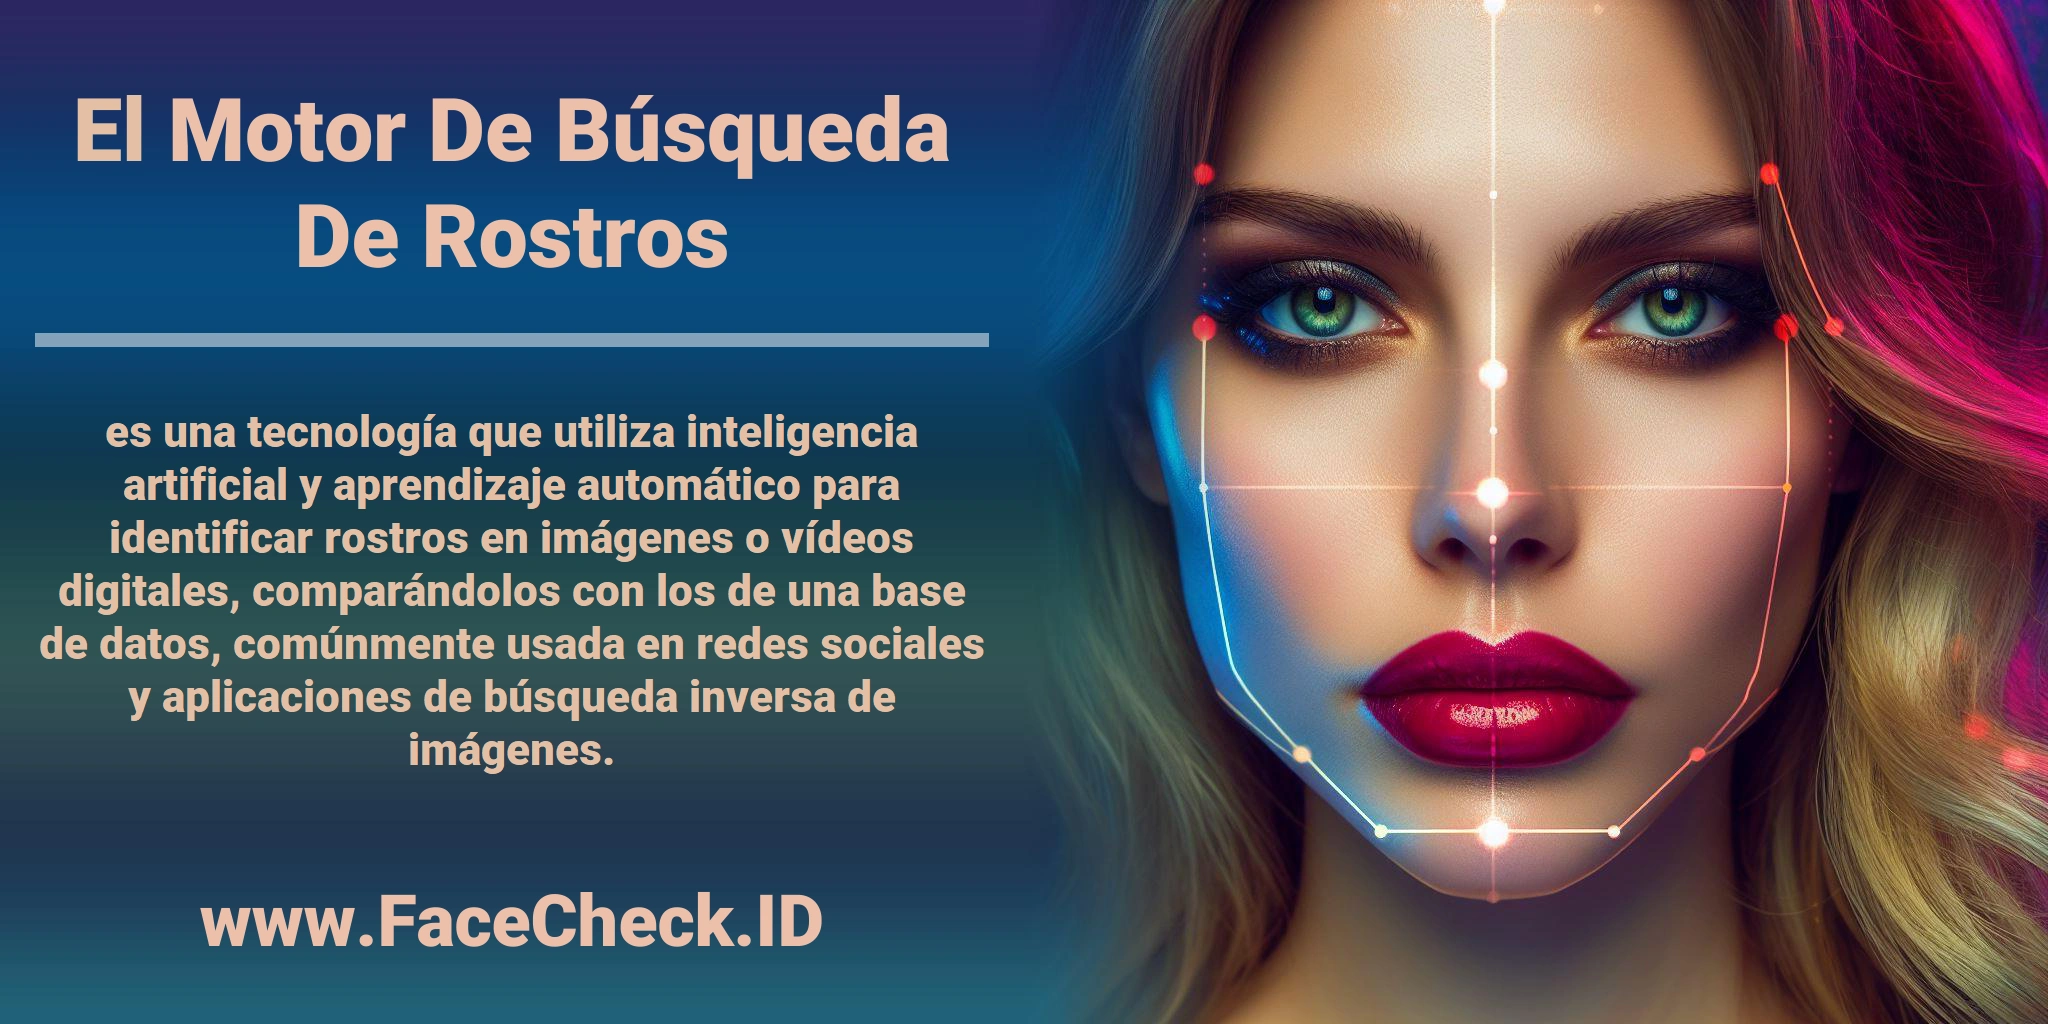 El <b>Motor De Búsqueda De Rostros</b> es una tecnología que utiliza inteligencia artificial y aprendizaje automático para identificar rostros en imágenes o vídeos digitales, comparándolos con los de una base de datos, comúnmente usada en redes sociales y aplicaciones de búsqueda inversa de imágenes.